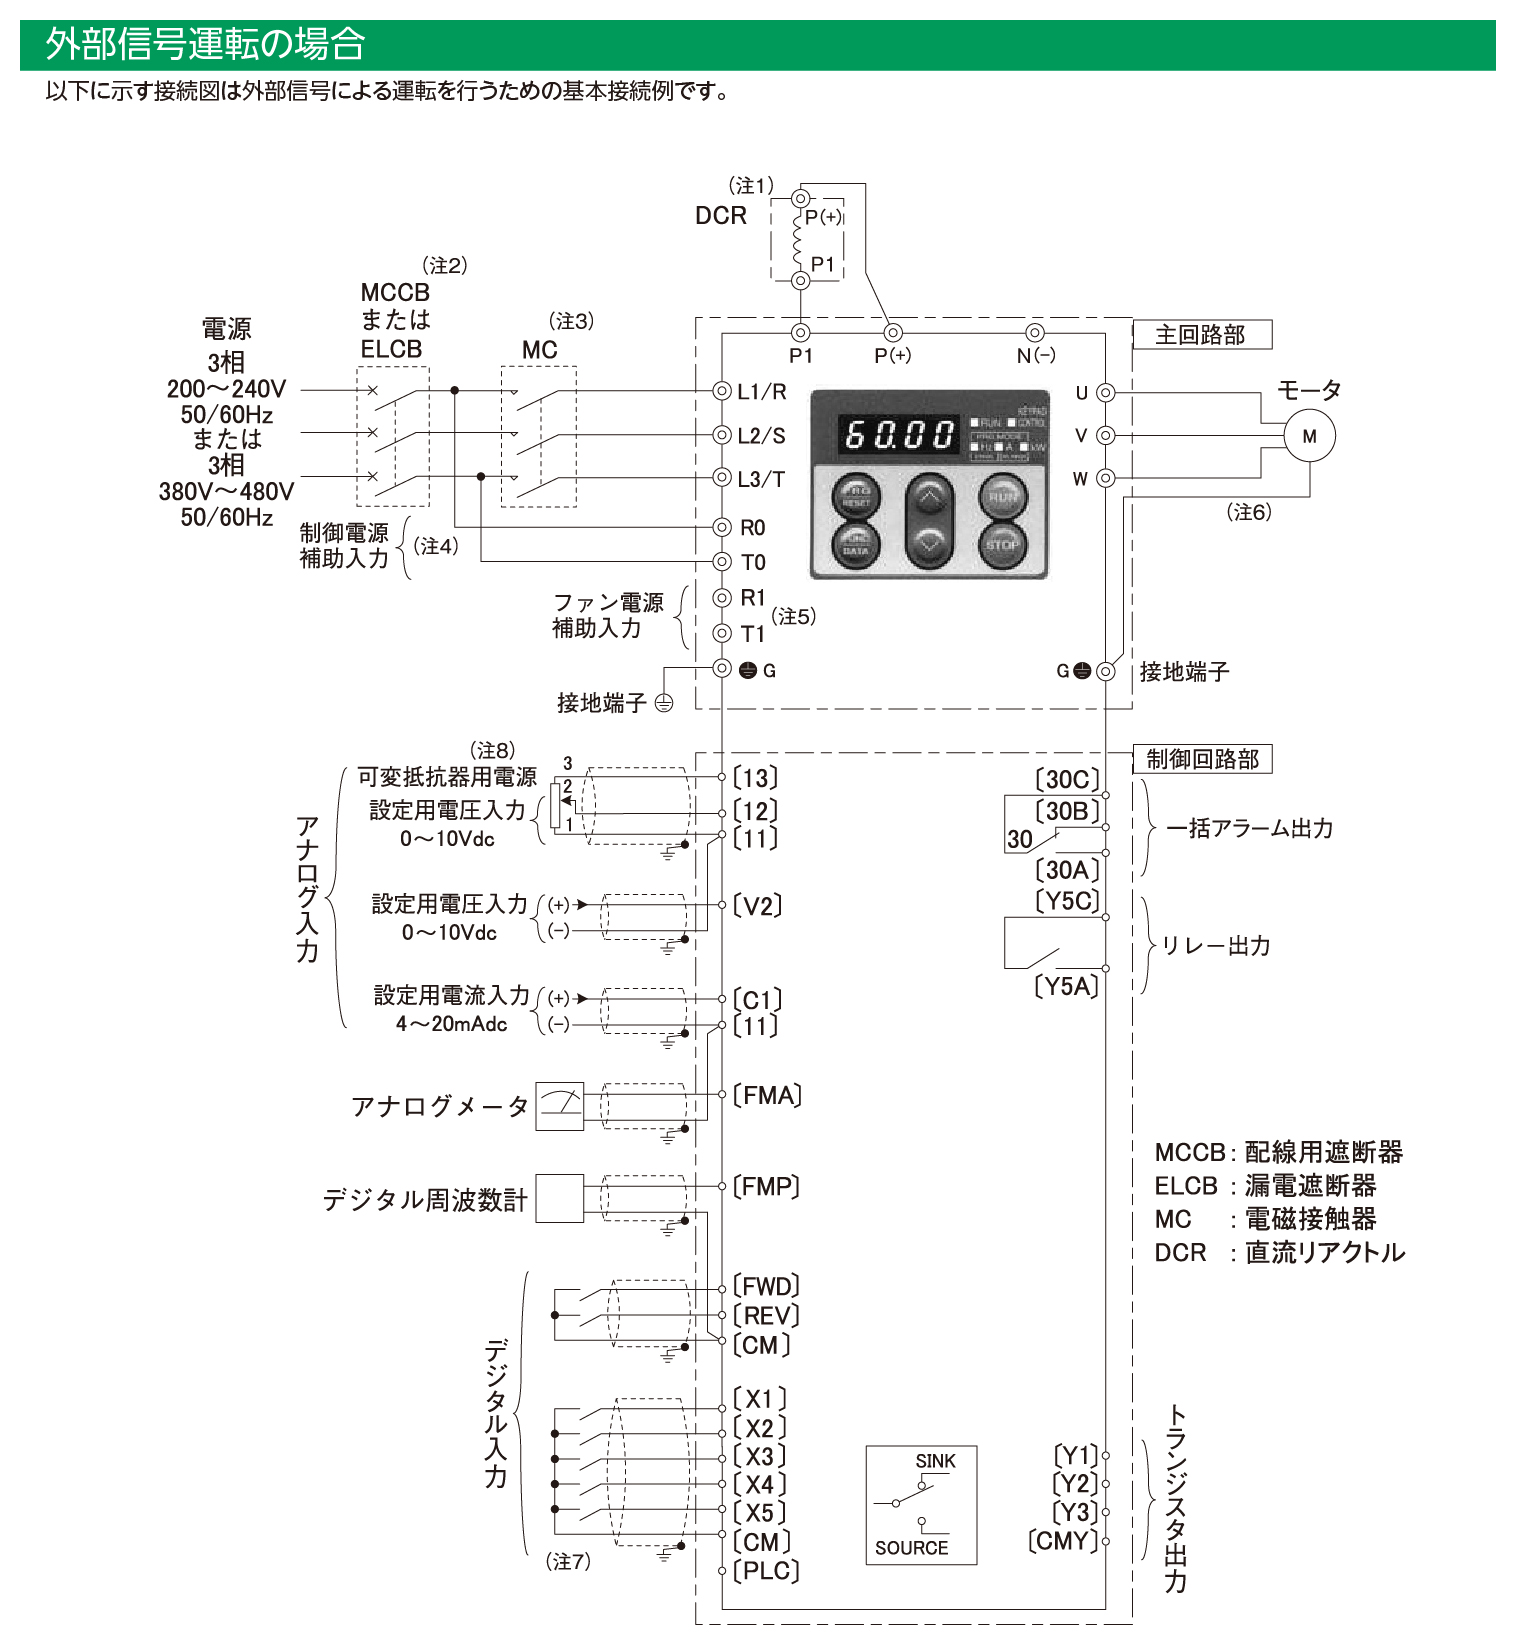 FRN355F1S-4Jの接続図(その2)